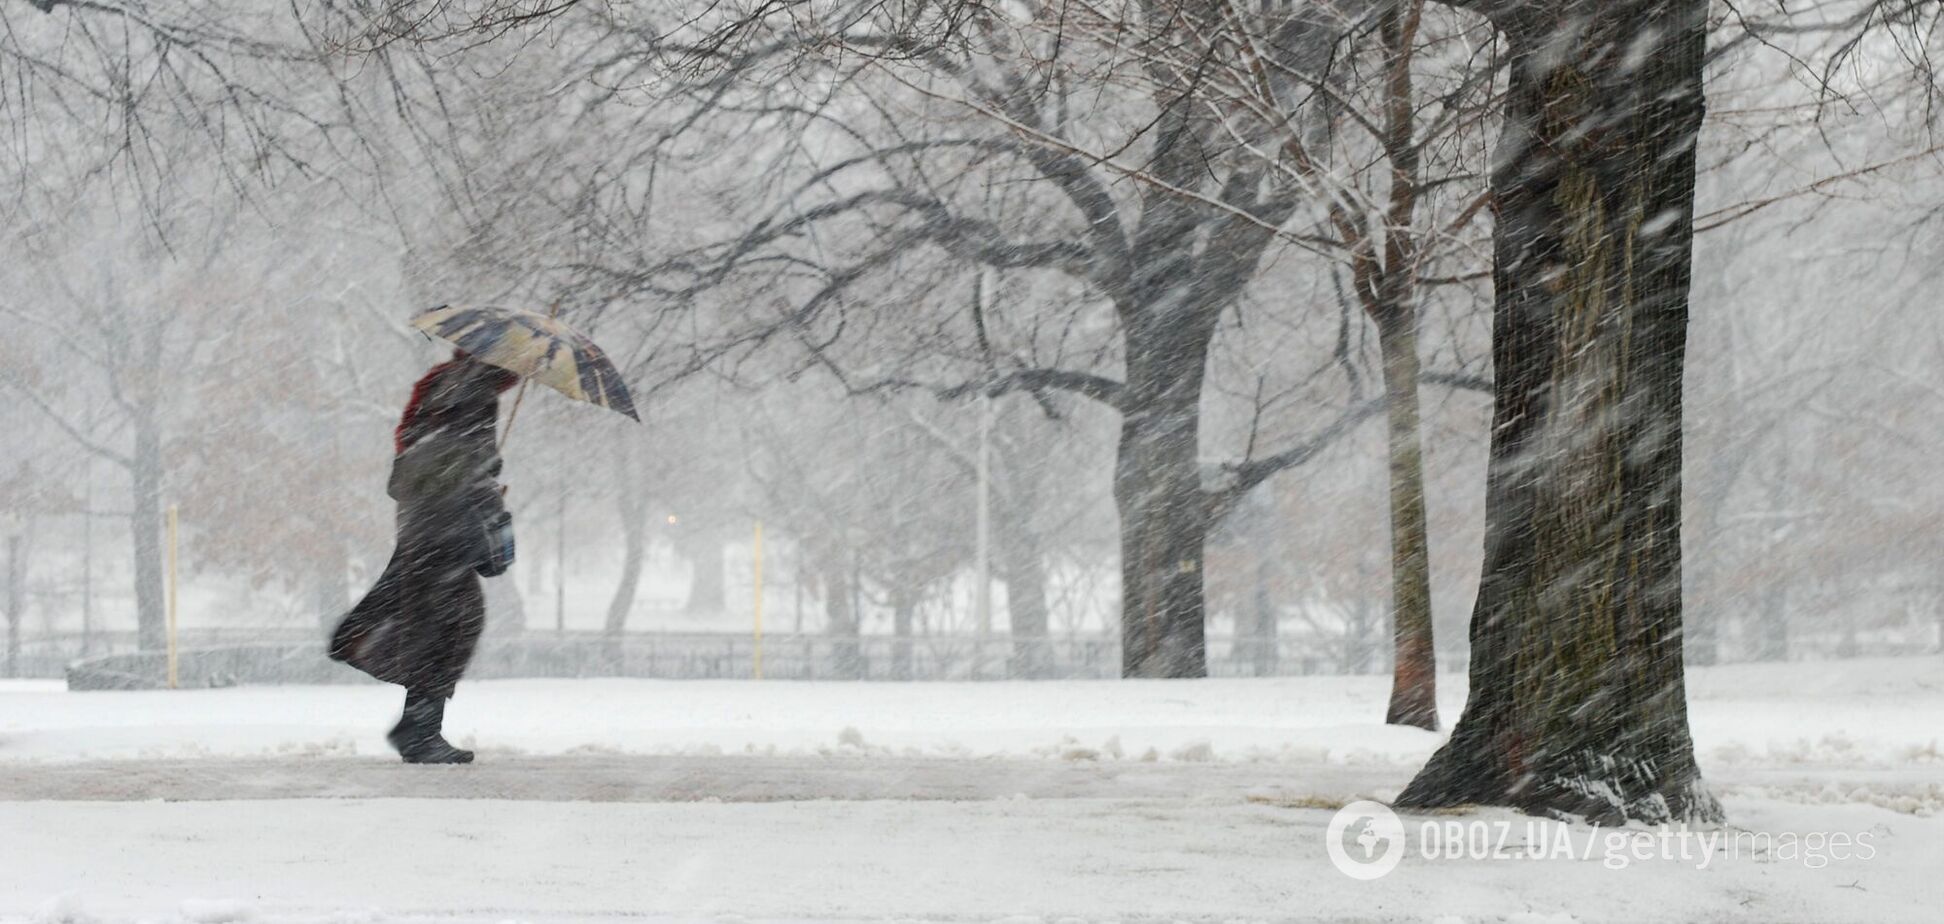 Частину України накриє снігом, на дорогах ожеледиця: синоптики дали прогноз погоди на суботу. Карта